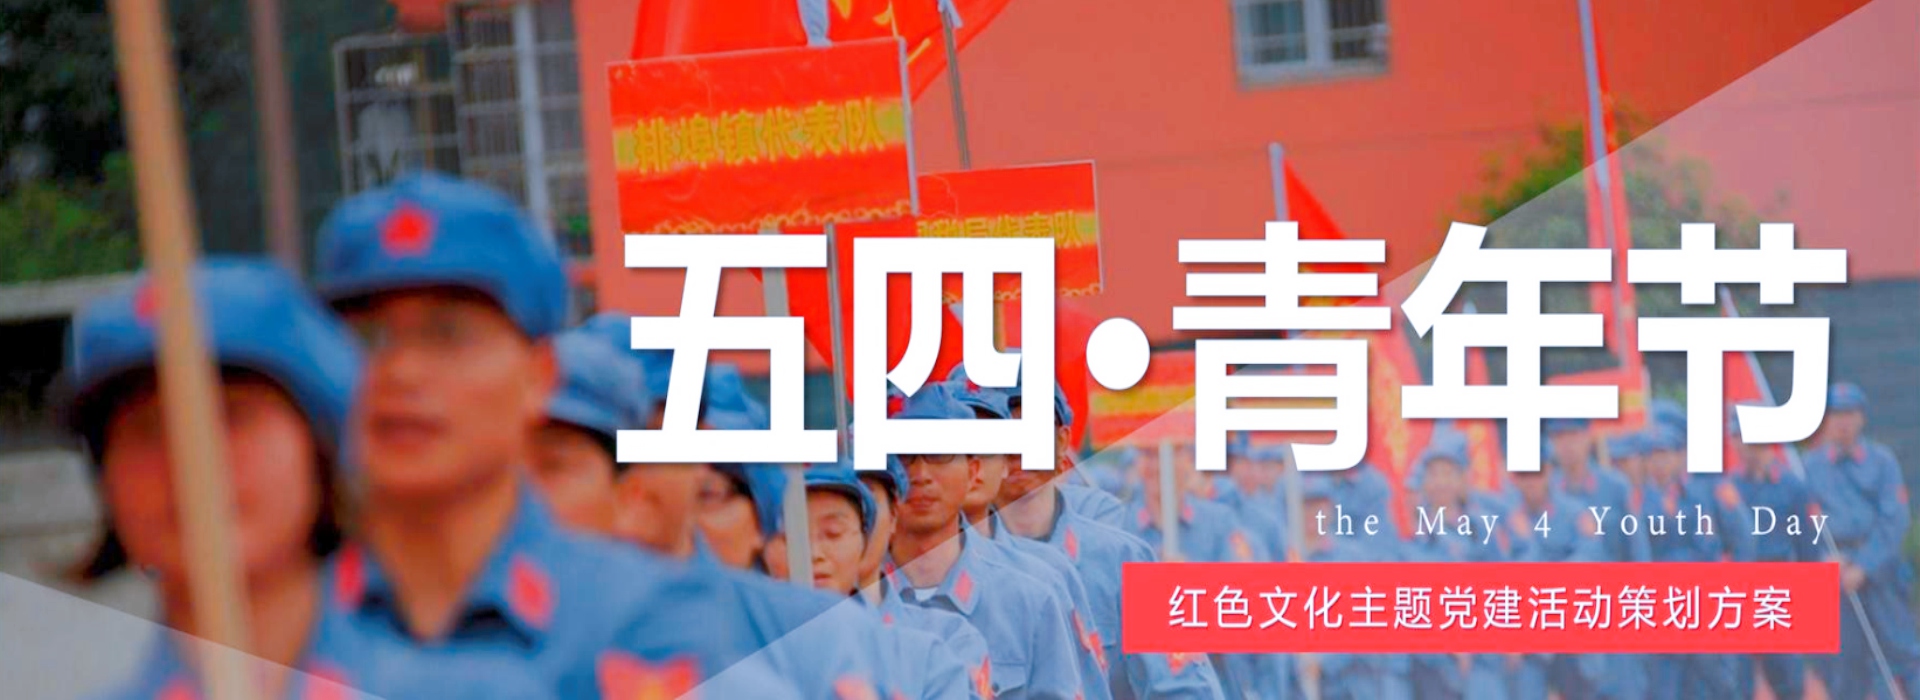 长沙米乐网址训练公司网站banner图